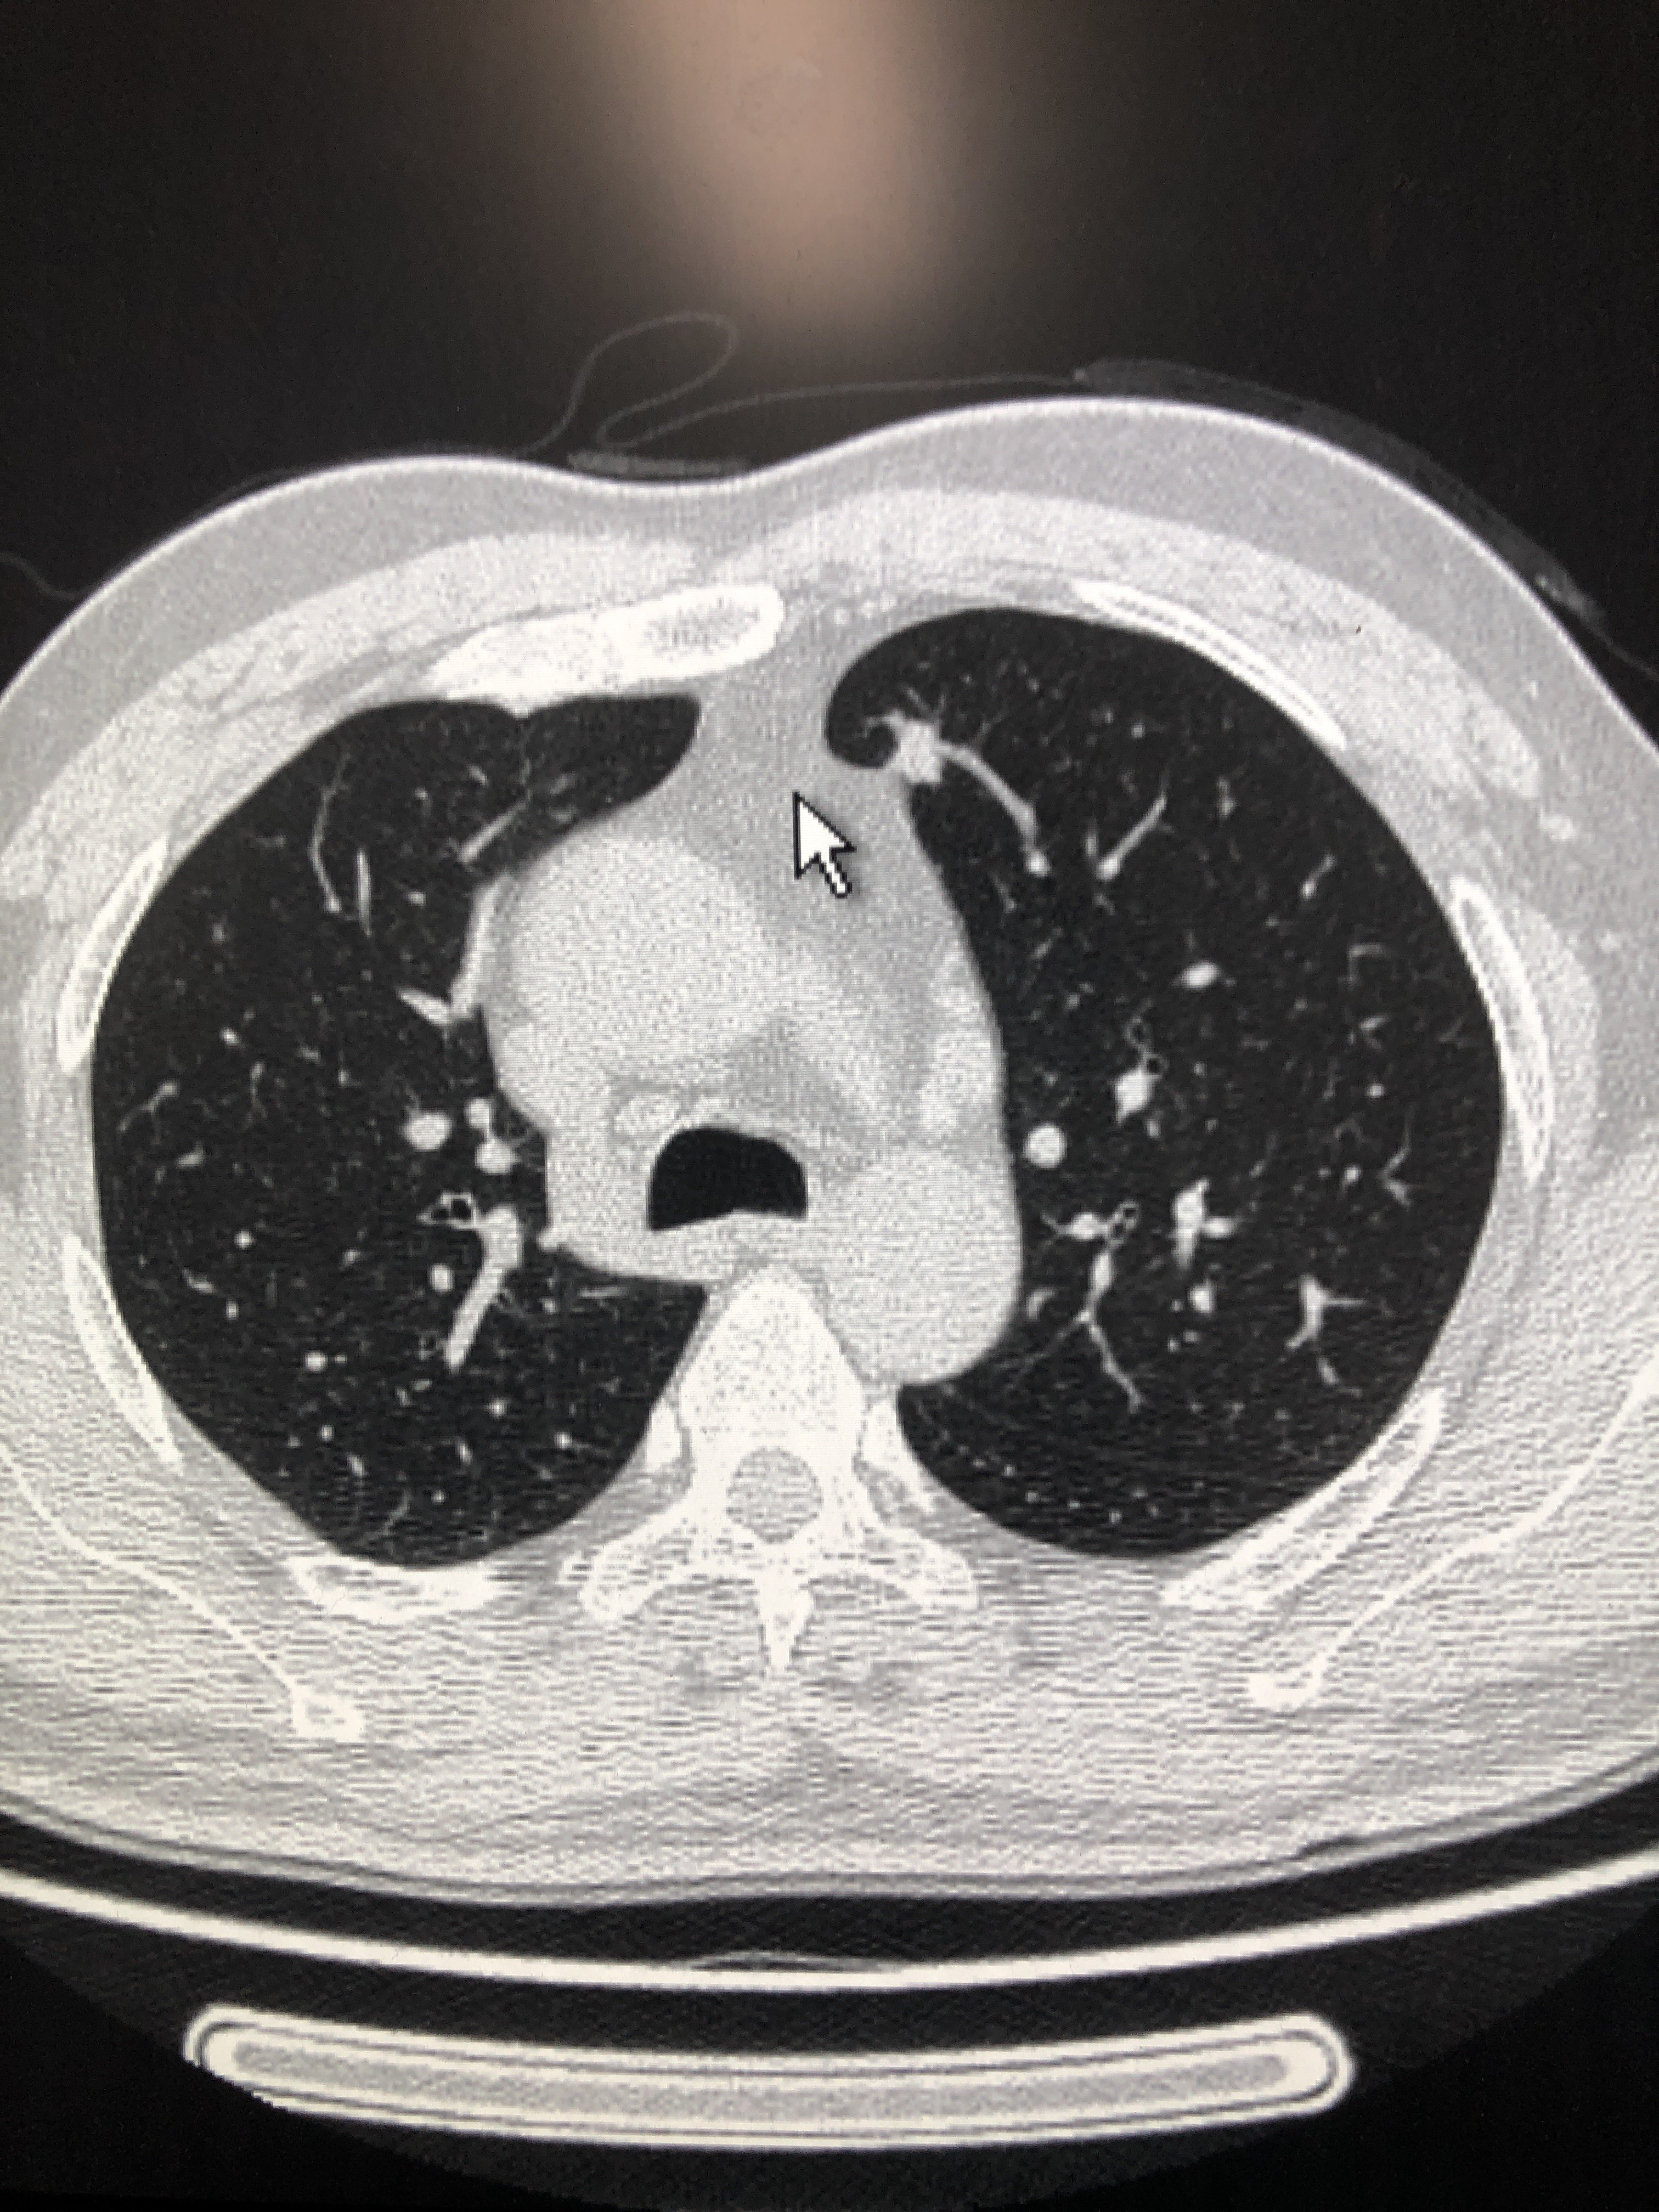 肺图片真实照片图片